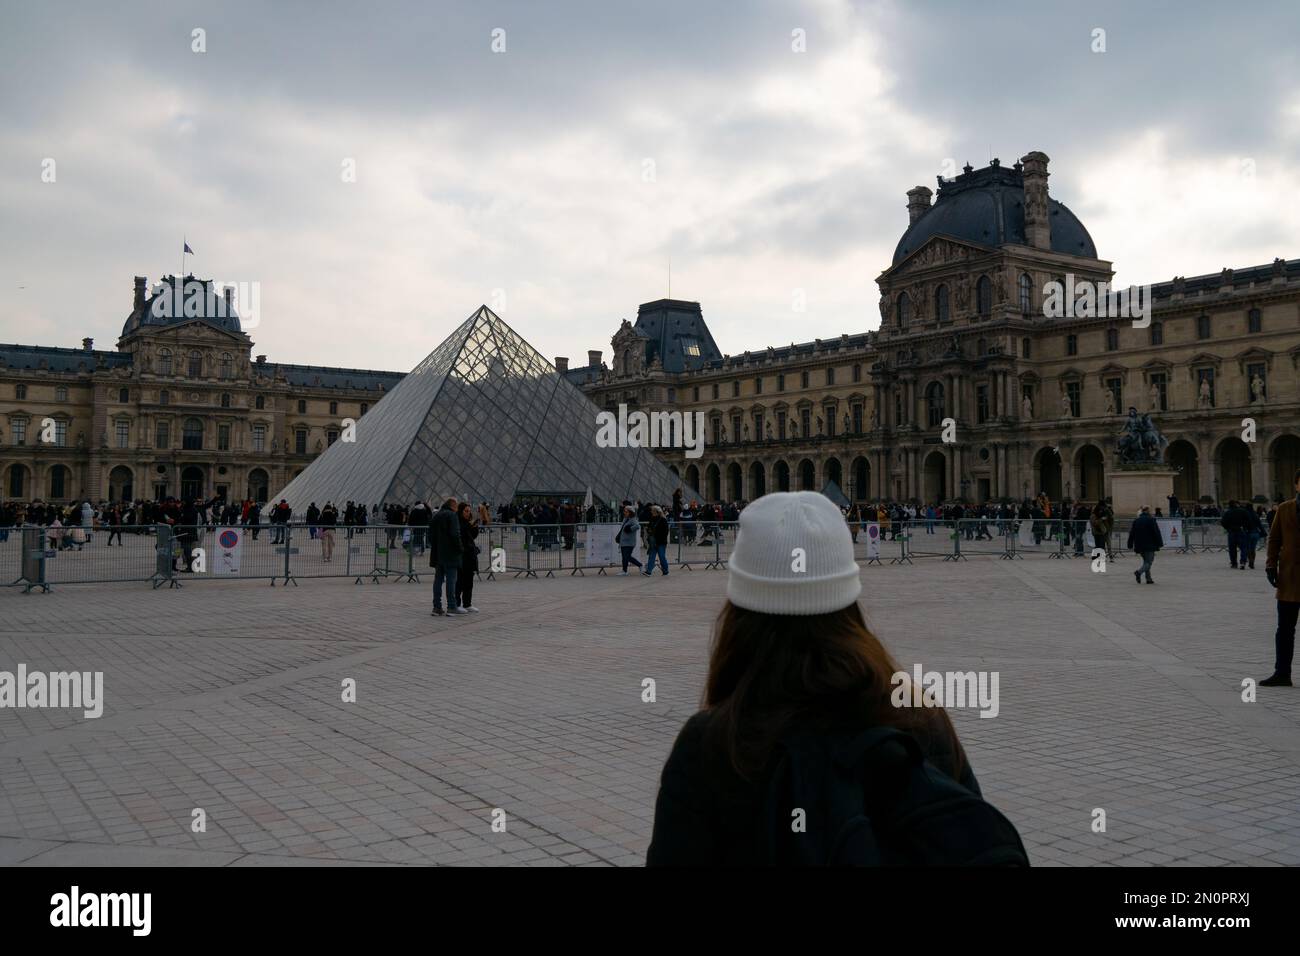 Pirâmide du Louvre. Le Louvre ist das meistbesuchte Museum der Welt, Glas-pirâmide. Besuch von Paris im Januar mit kaltem Wetter an bewölkten Tagen. Touristen. Stockfoto